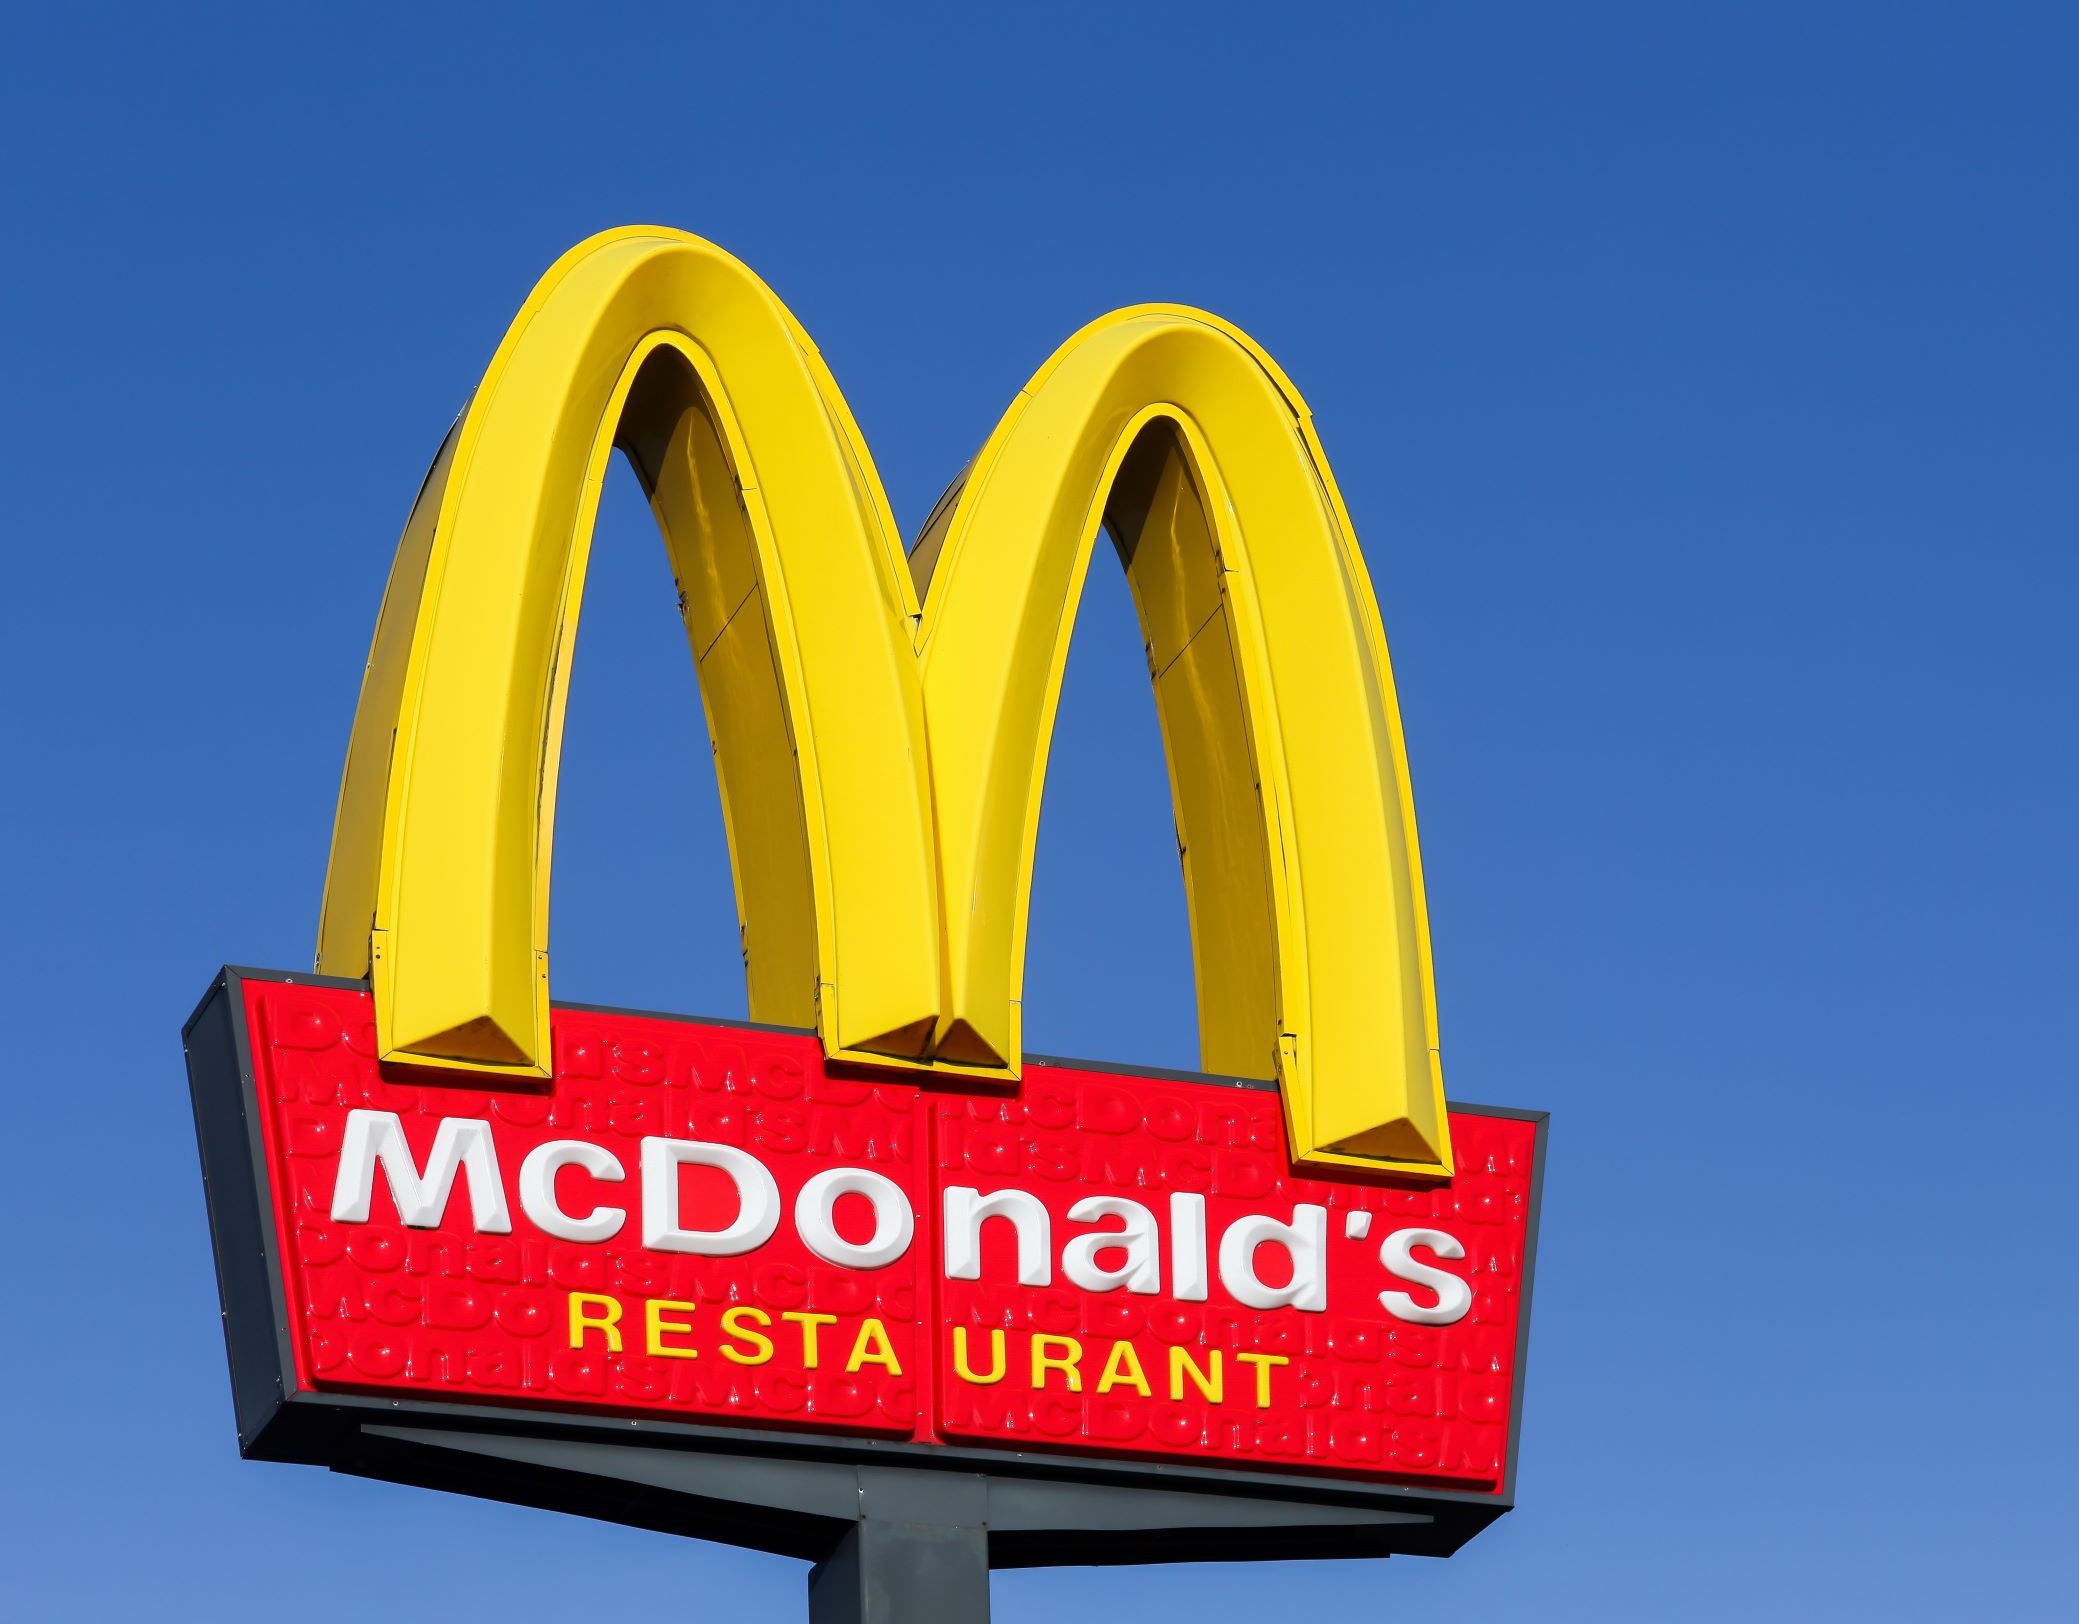 Τα burger King μας ζητάνε να παραγγείλουμε από τα McDonald’s